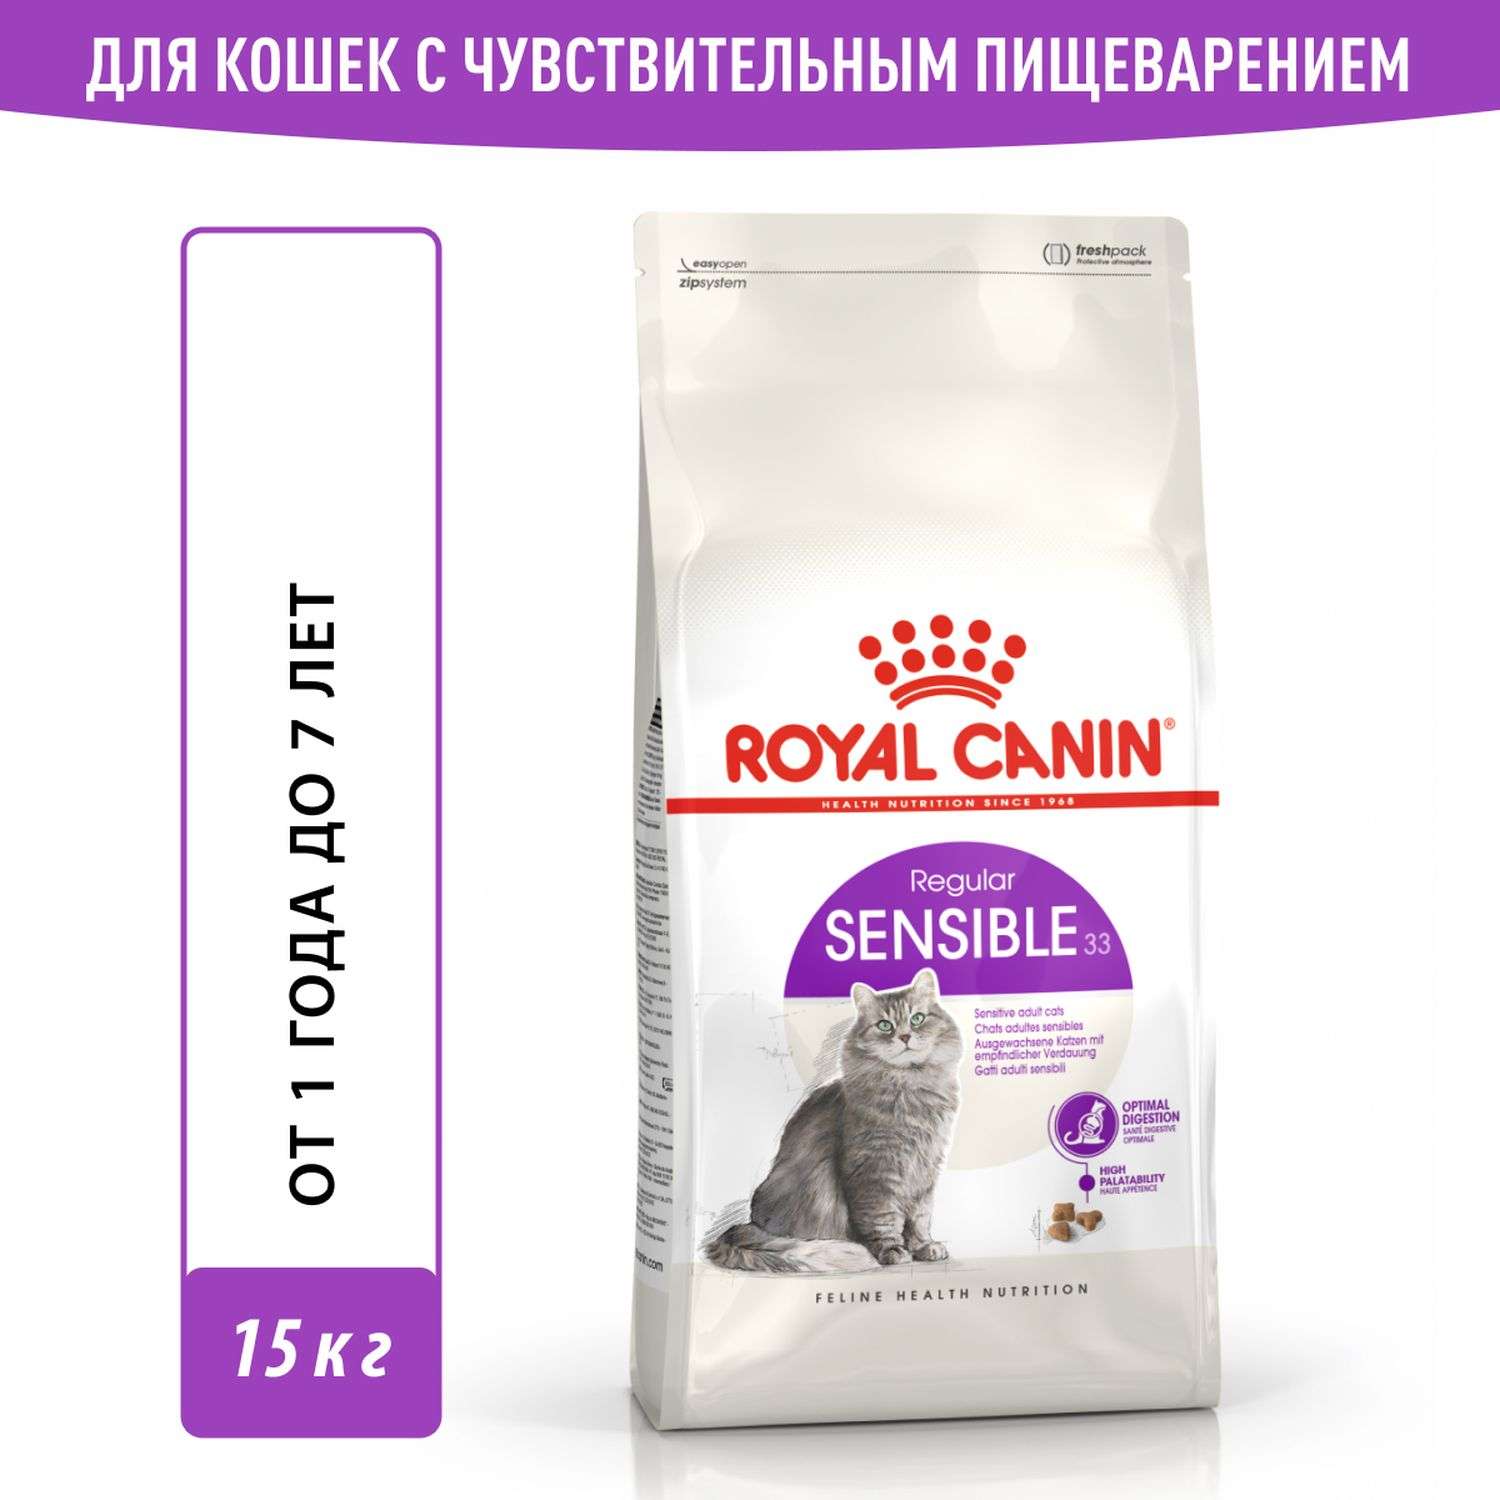 Корм сухой для кошек ROYAL CANIN Sensible 33 15кг с чувствительной пищеварительной системой - фото 1